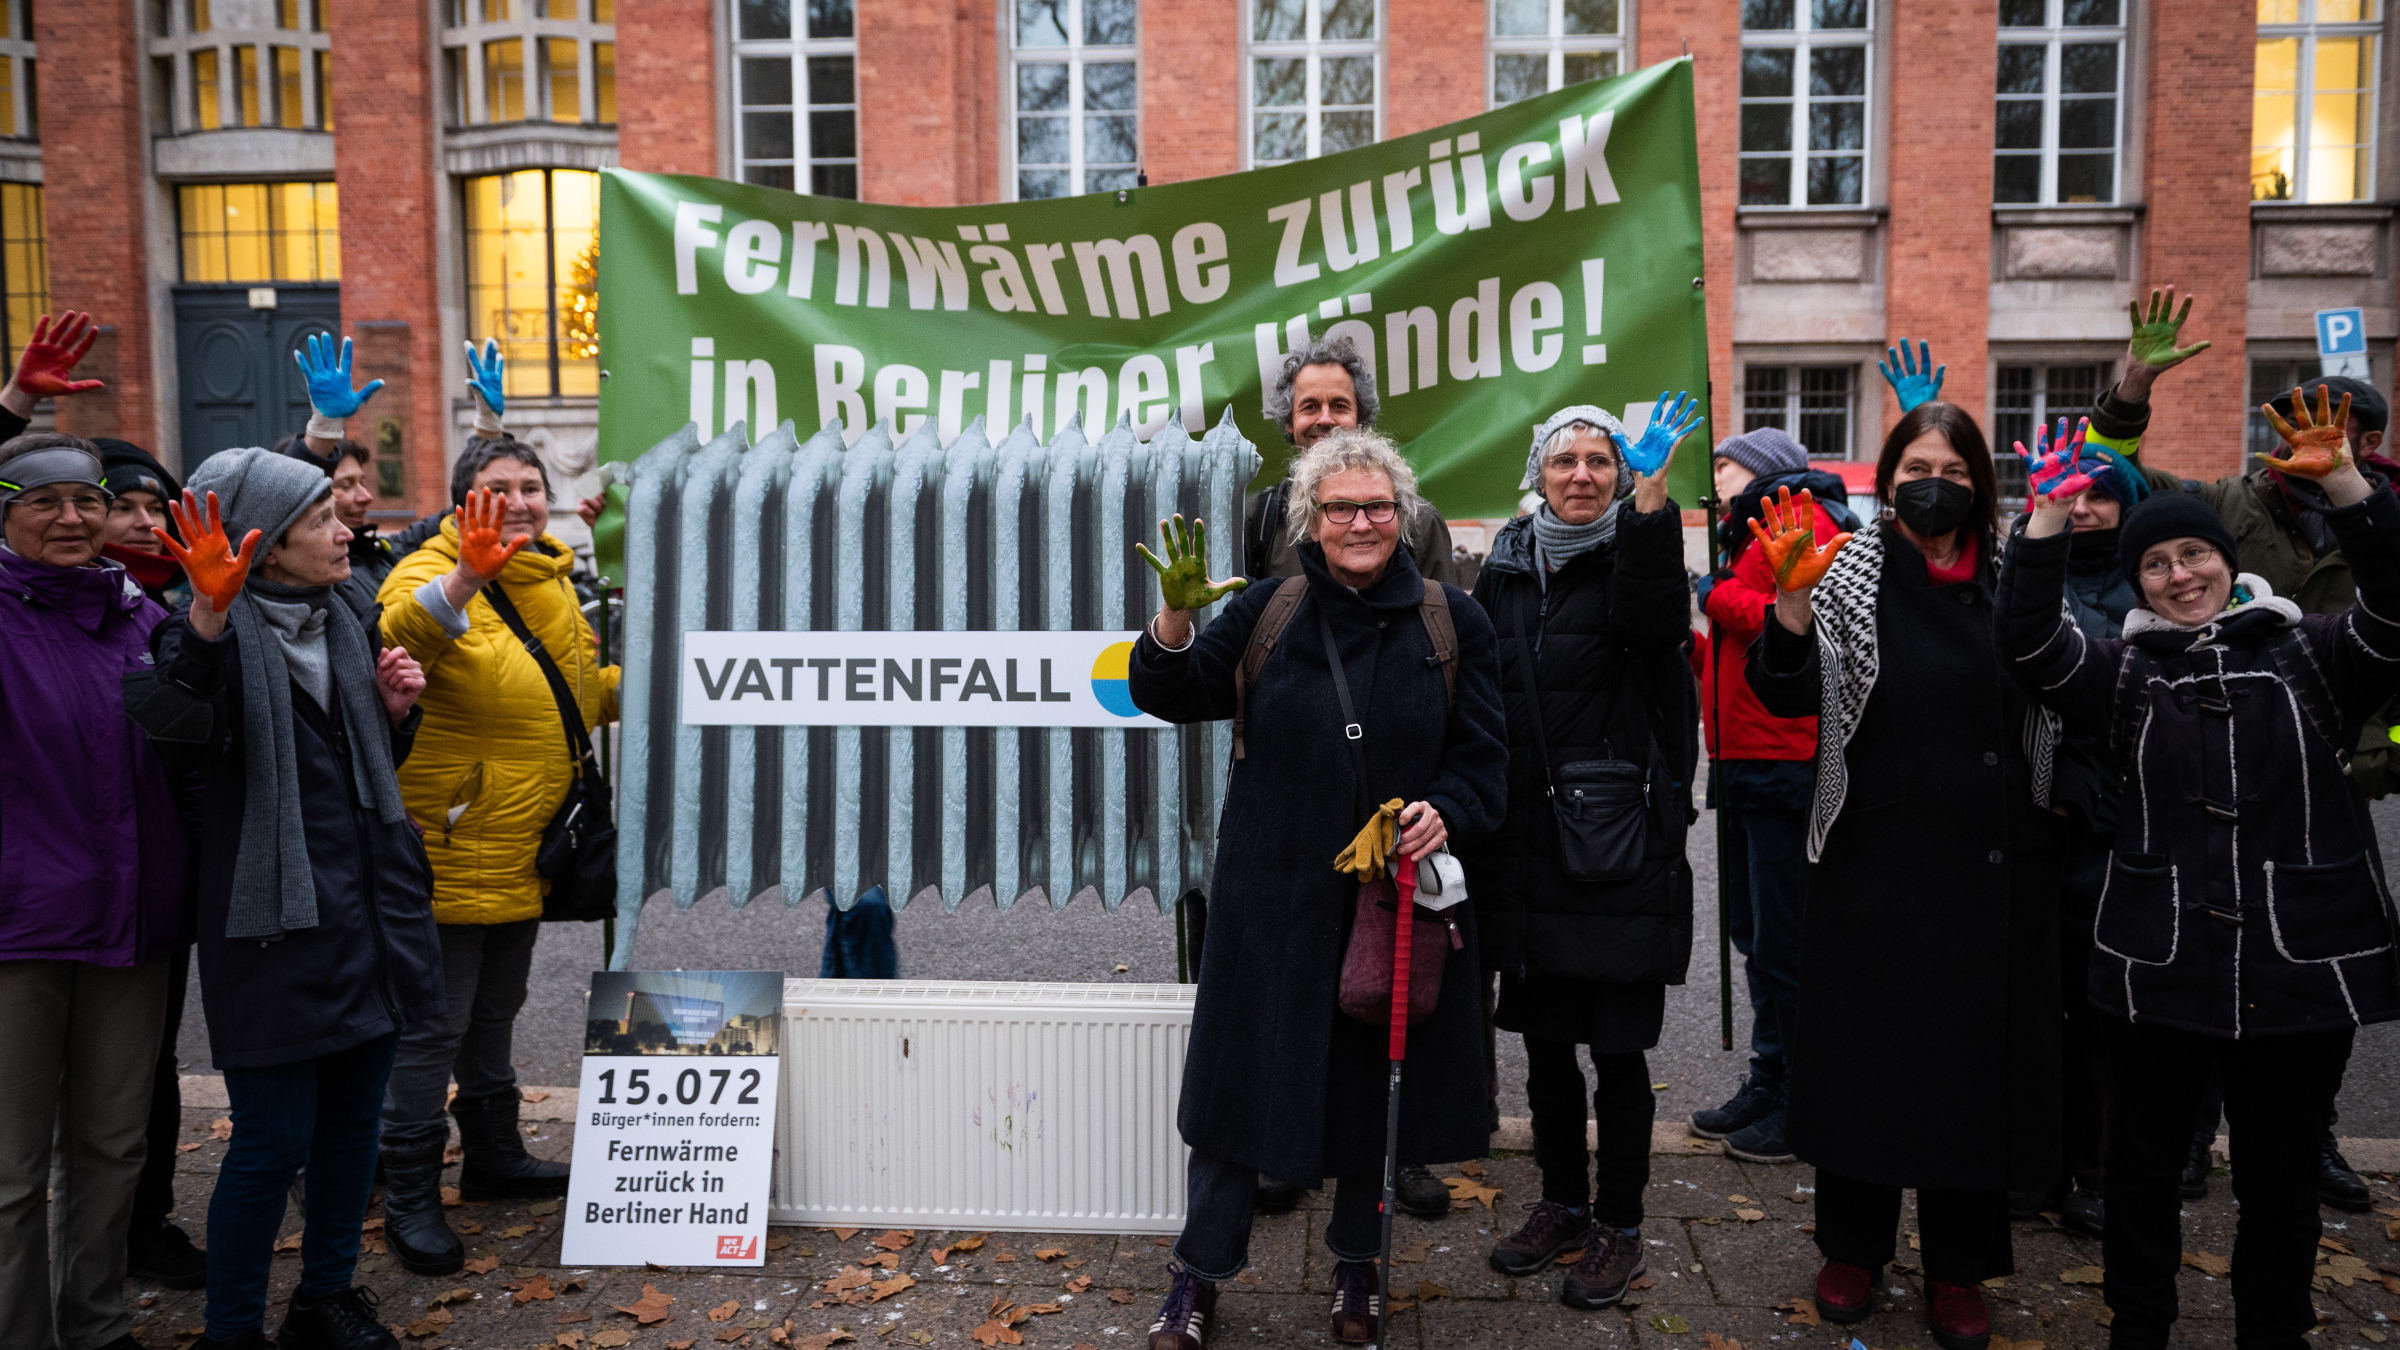 Petitionsübergabe an die damalige Umweltsenatorin Bettina Jarasch (Grüne). Auf einem großen Banner ist zu lesen: Fernwärme zurück in Berliner Hände! Aktive halten dazu ihre bunt bemalten Hände in die Höhe.